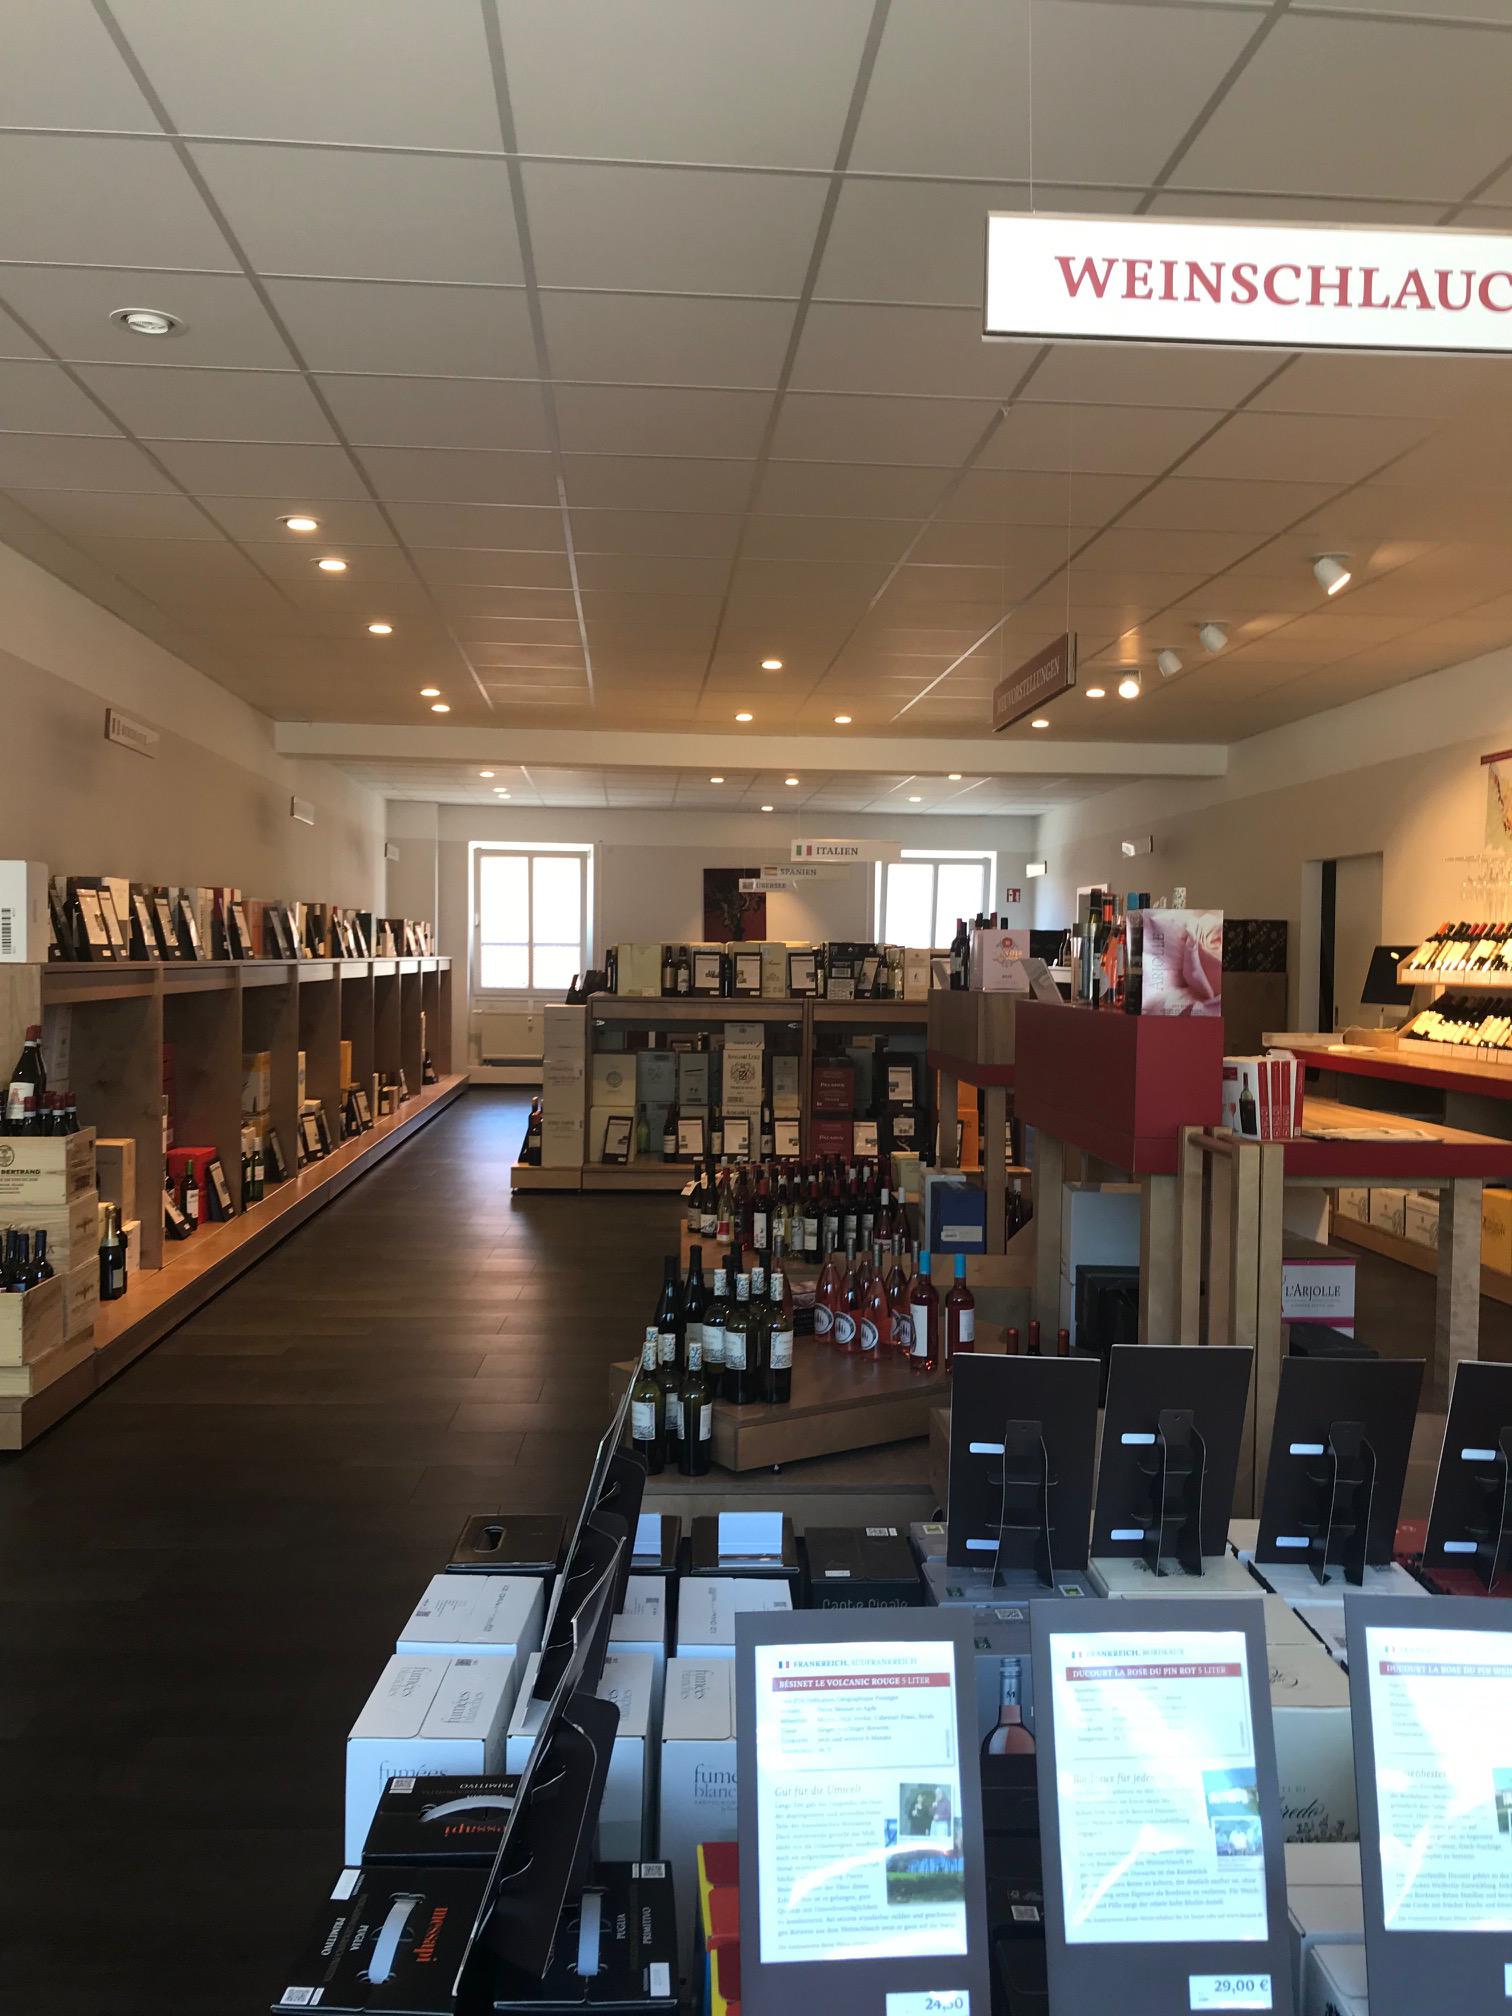 Bilder Jacques’ Wein-Depot Forchheim